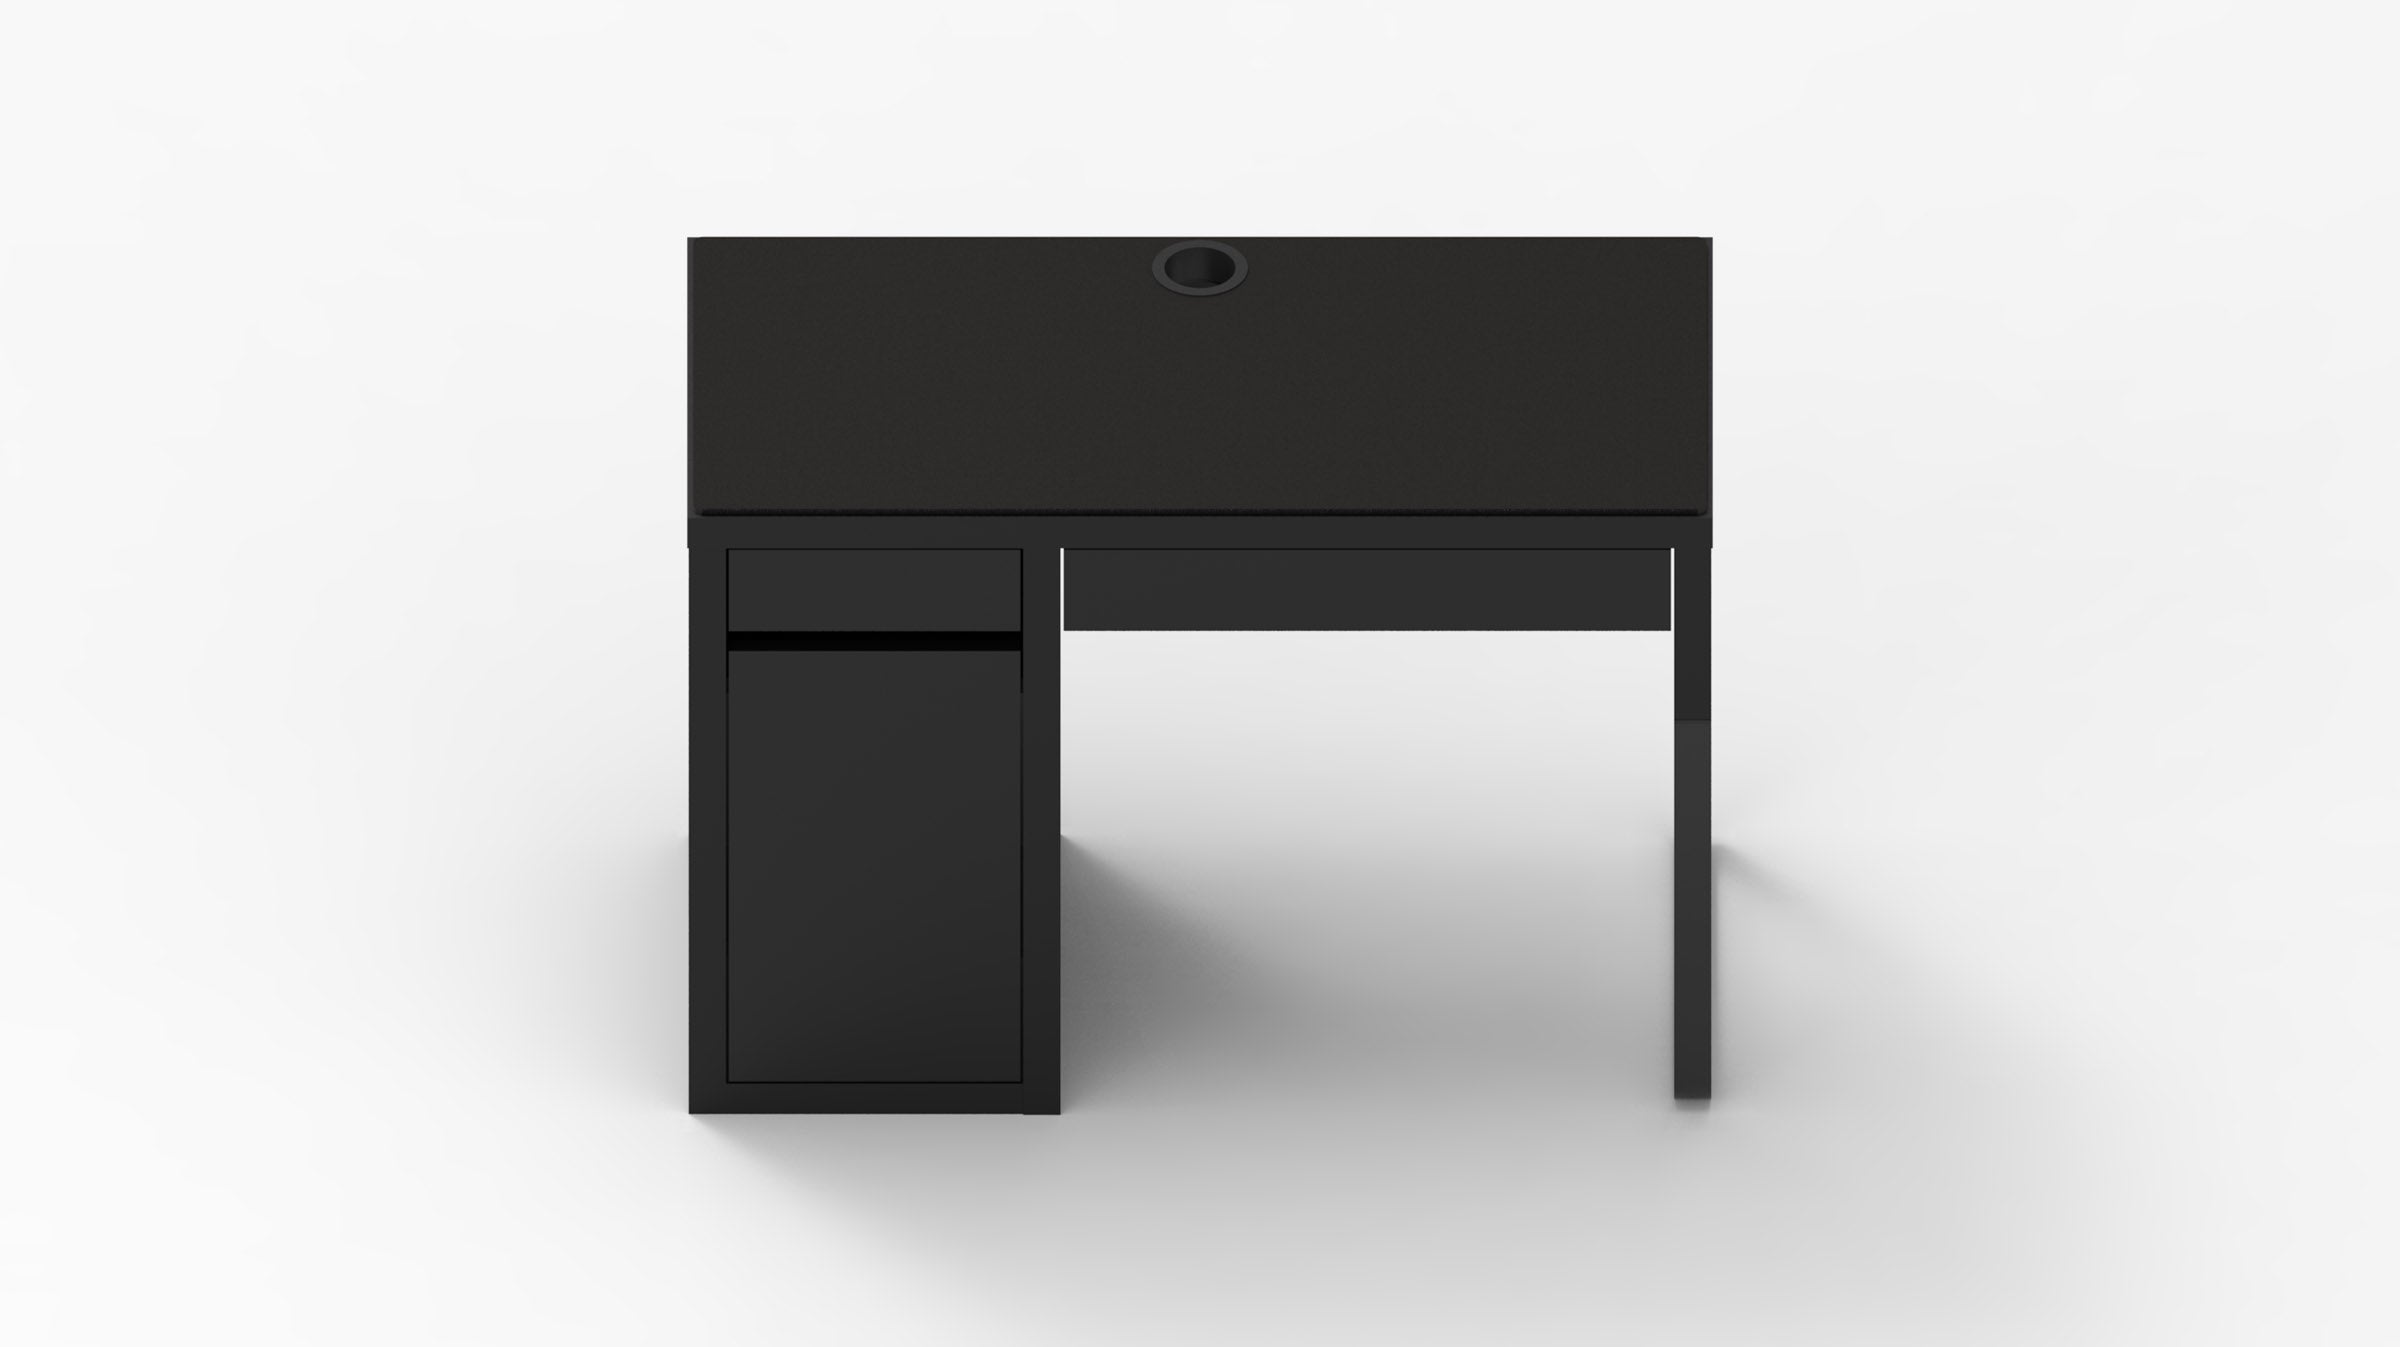 MK Black IKEA MICKE Desk Mat (41" / 105 cm) Full-desk Mouse Pad MKK7WLDO2D |58937|